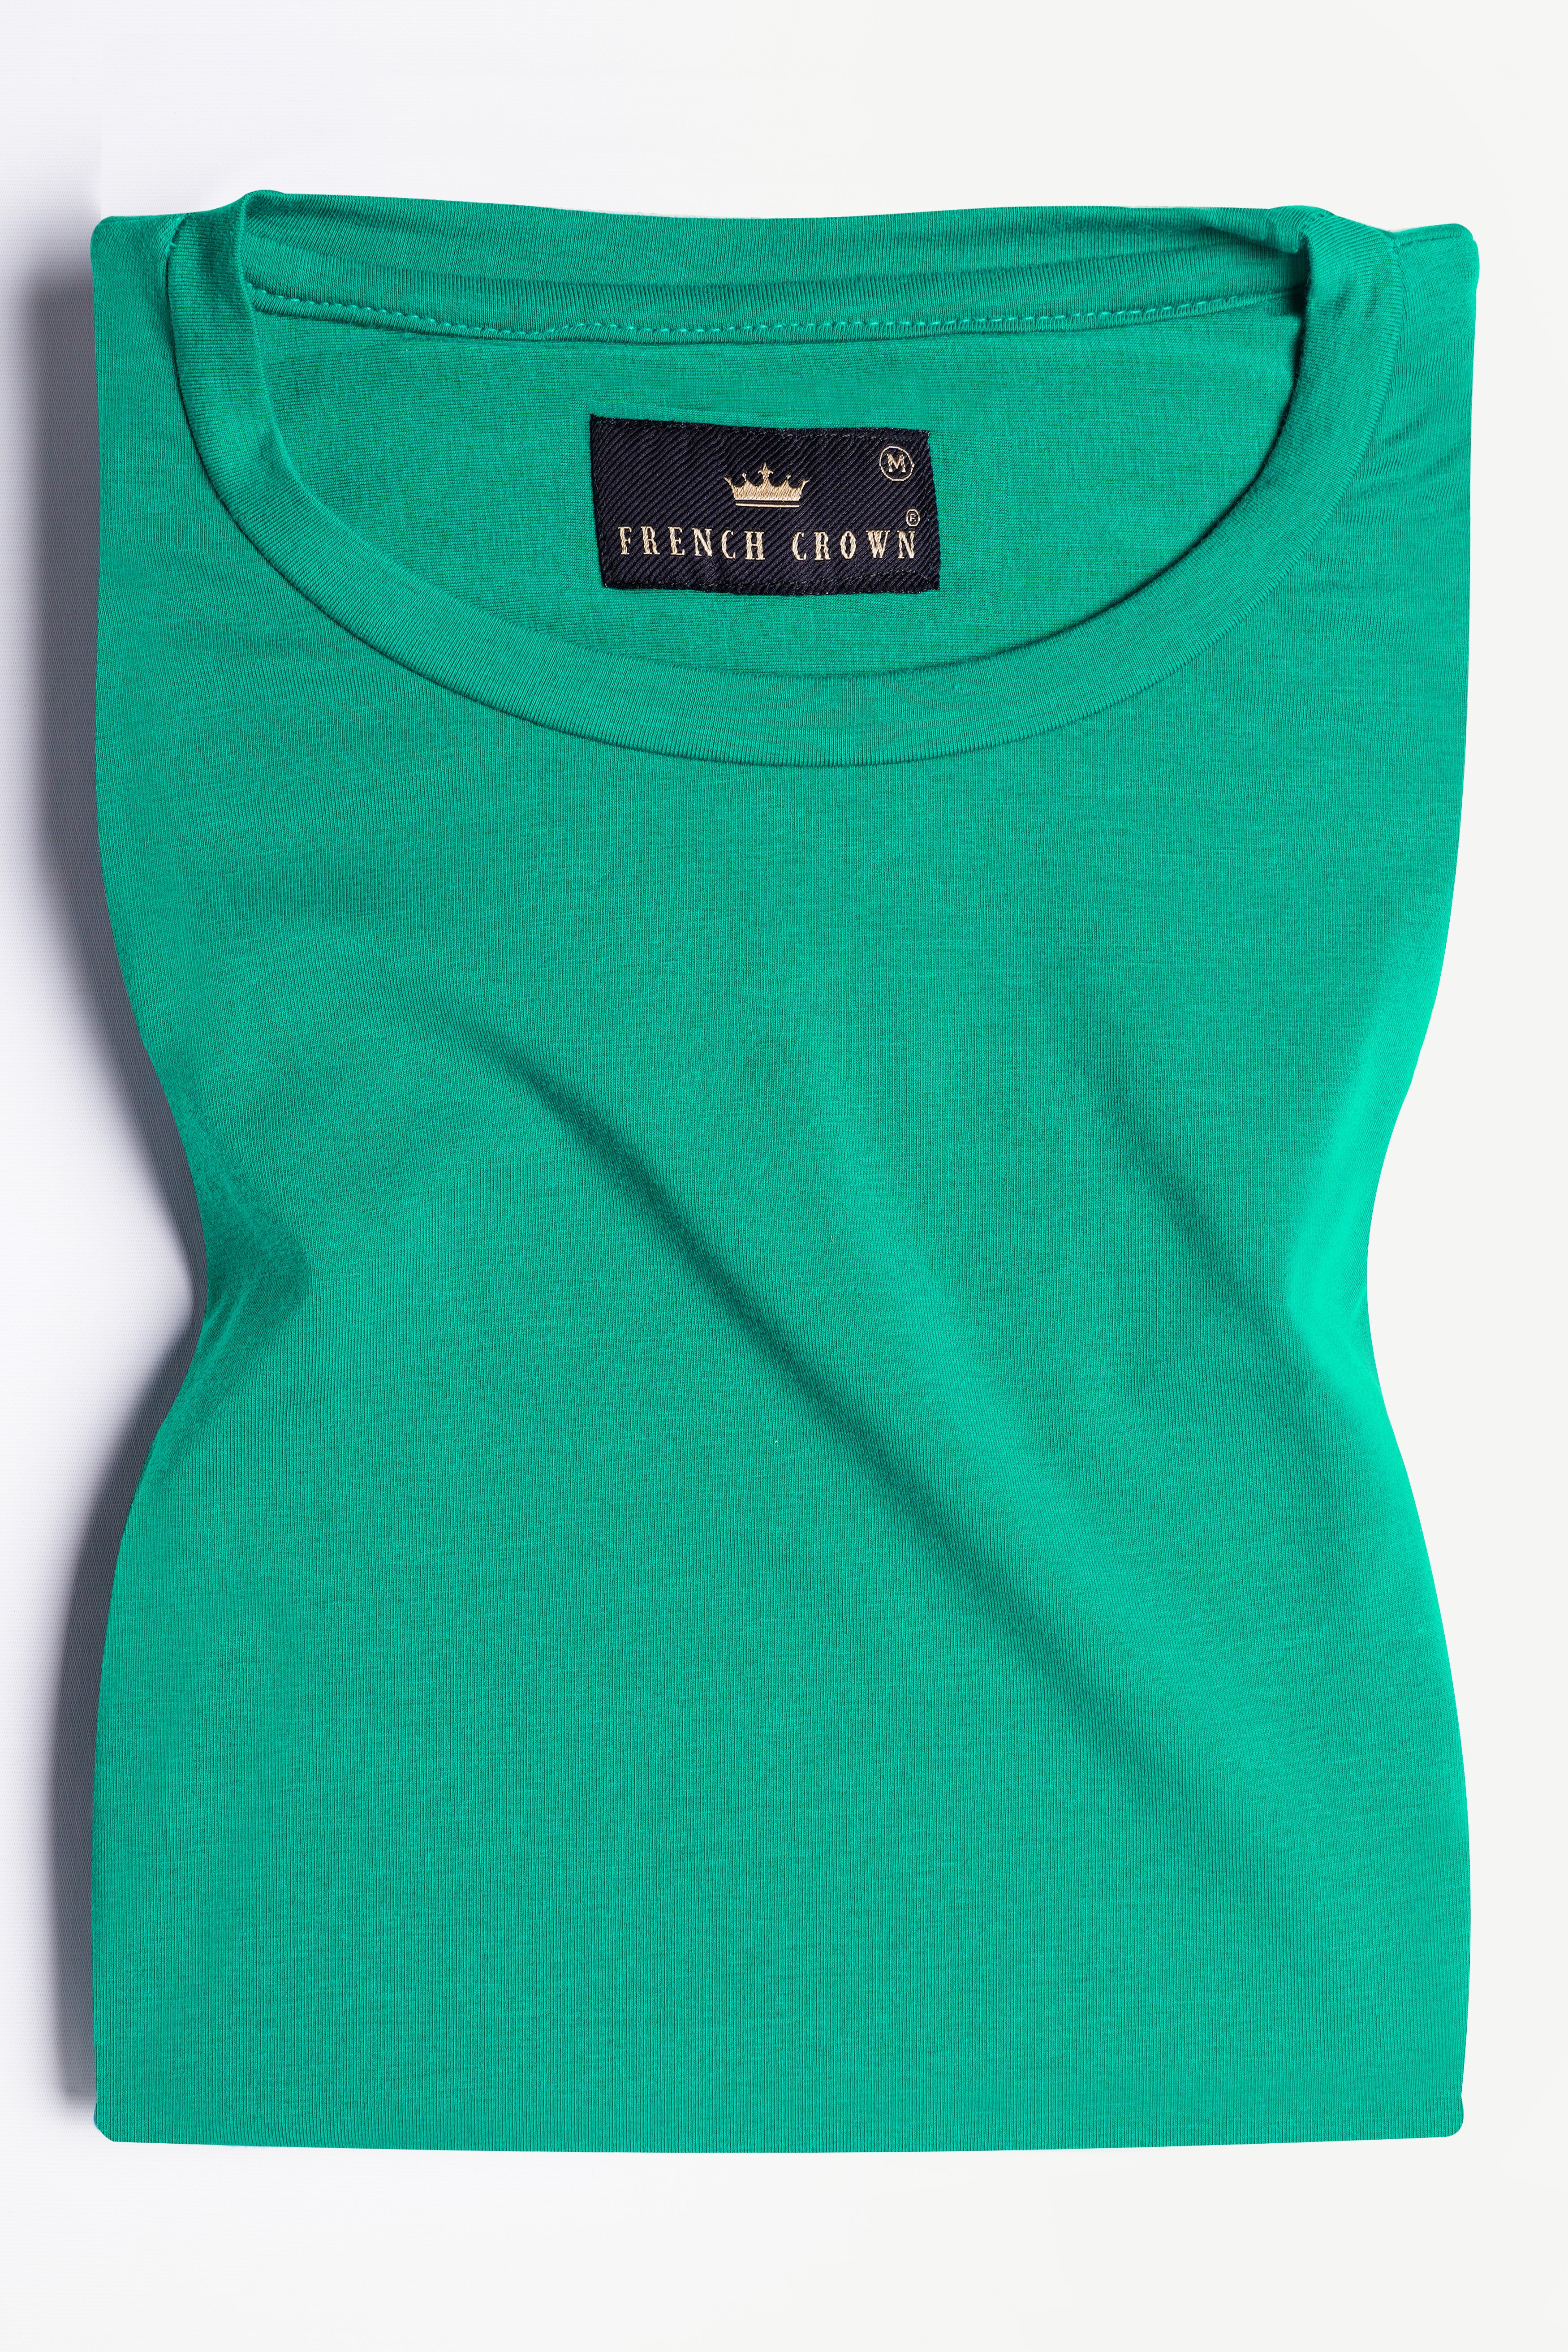 Gossamer Green Cats Hand Painted Premium Cotton T-shirt TS005-W017-ART-S, TS005-W017-ART-M, TS005-W017-ART-L, TS005-W017-ART-XL, TS005-W017-ART-XXL